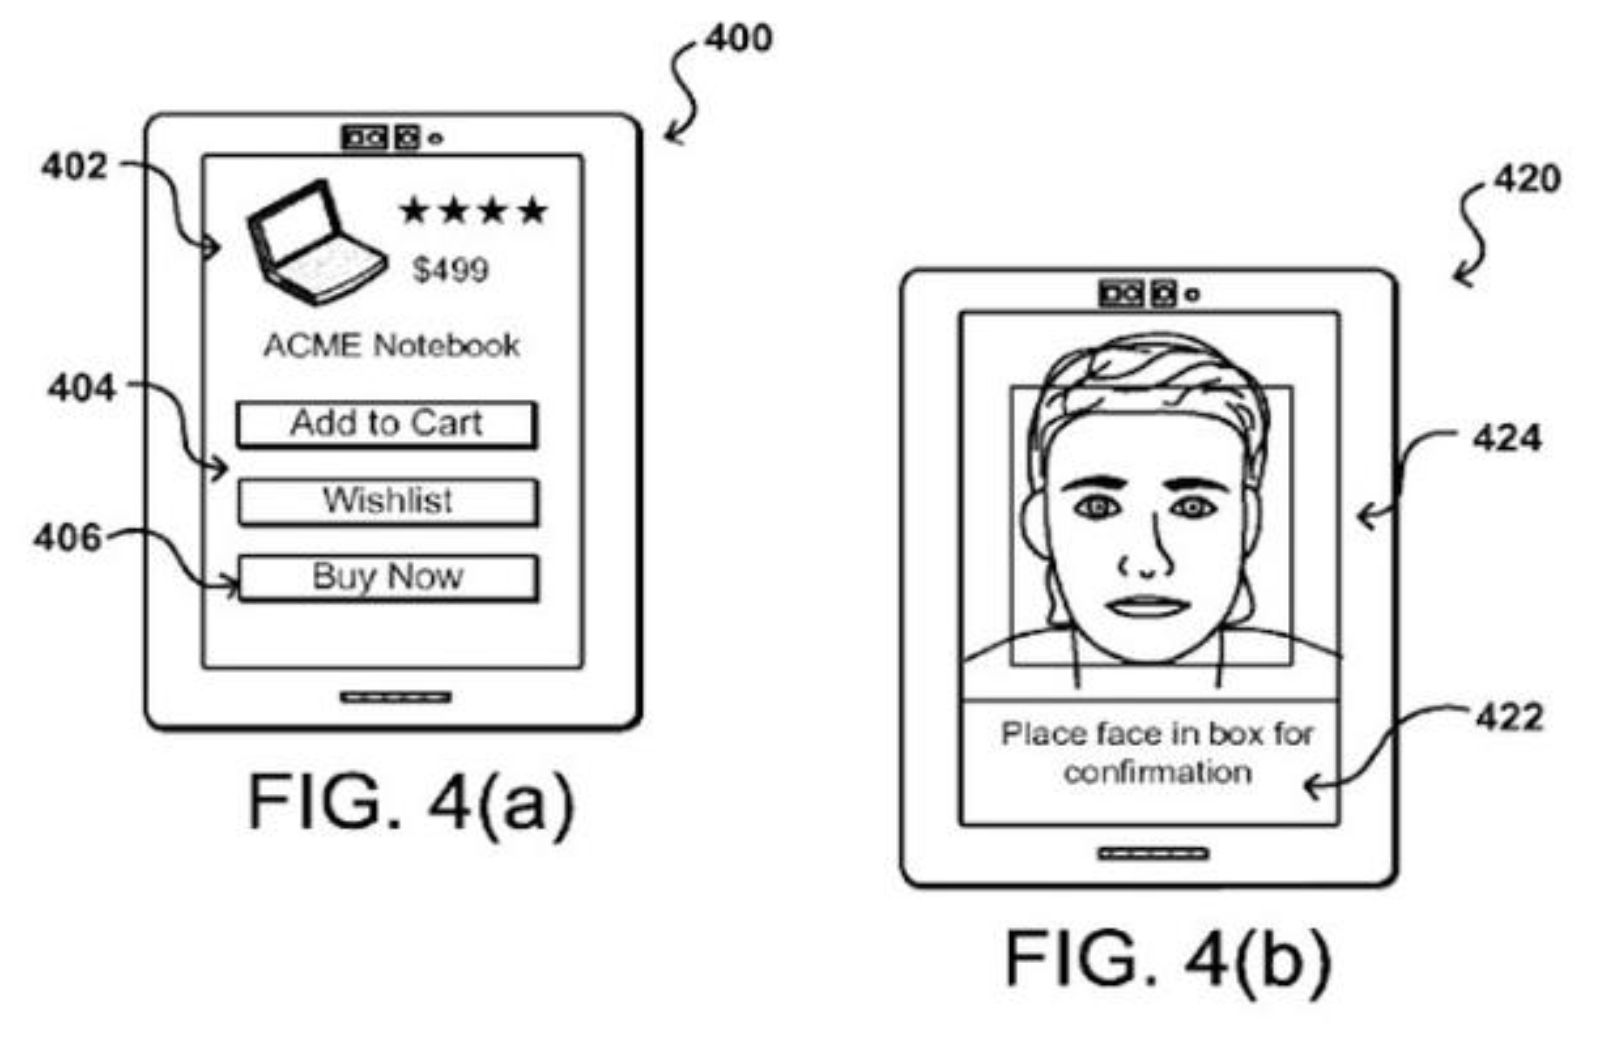 Pagare con un selfie: Amazon deposita il brevetto